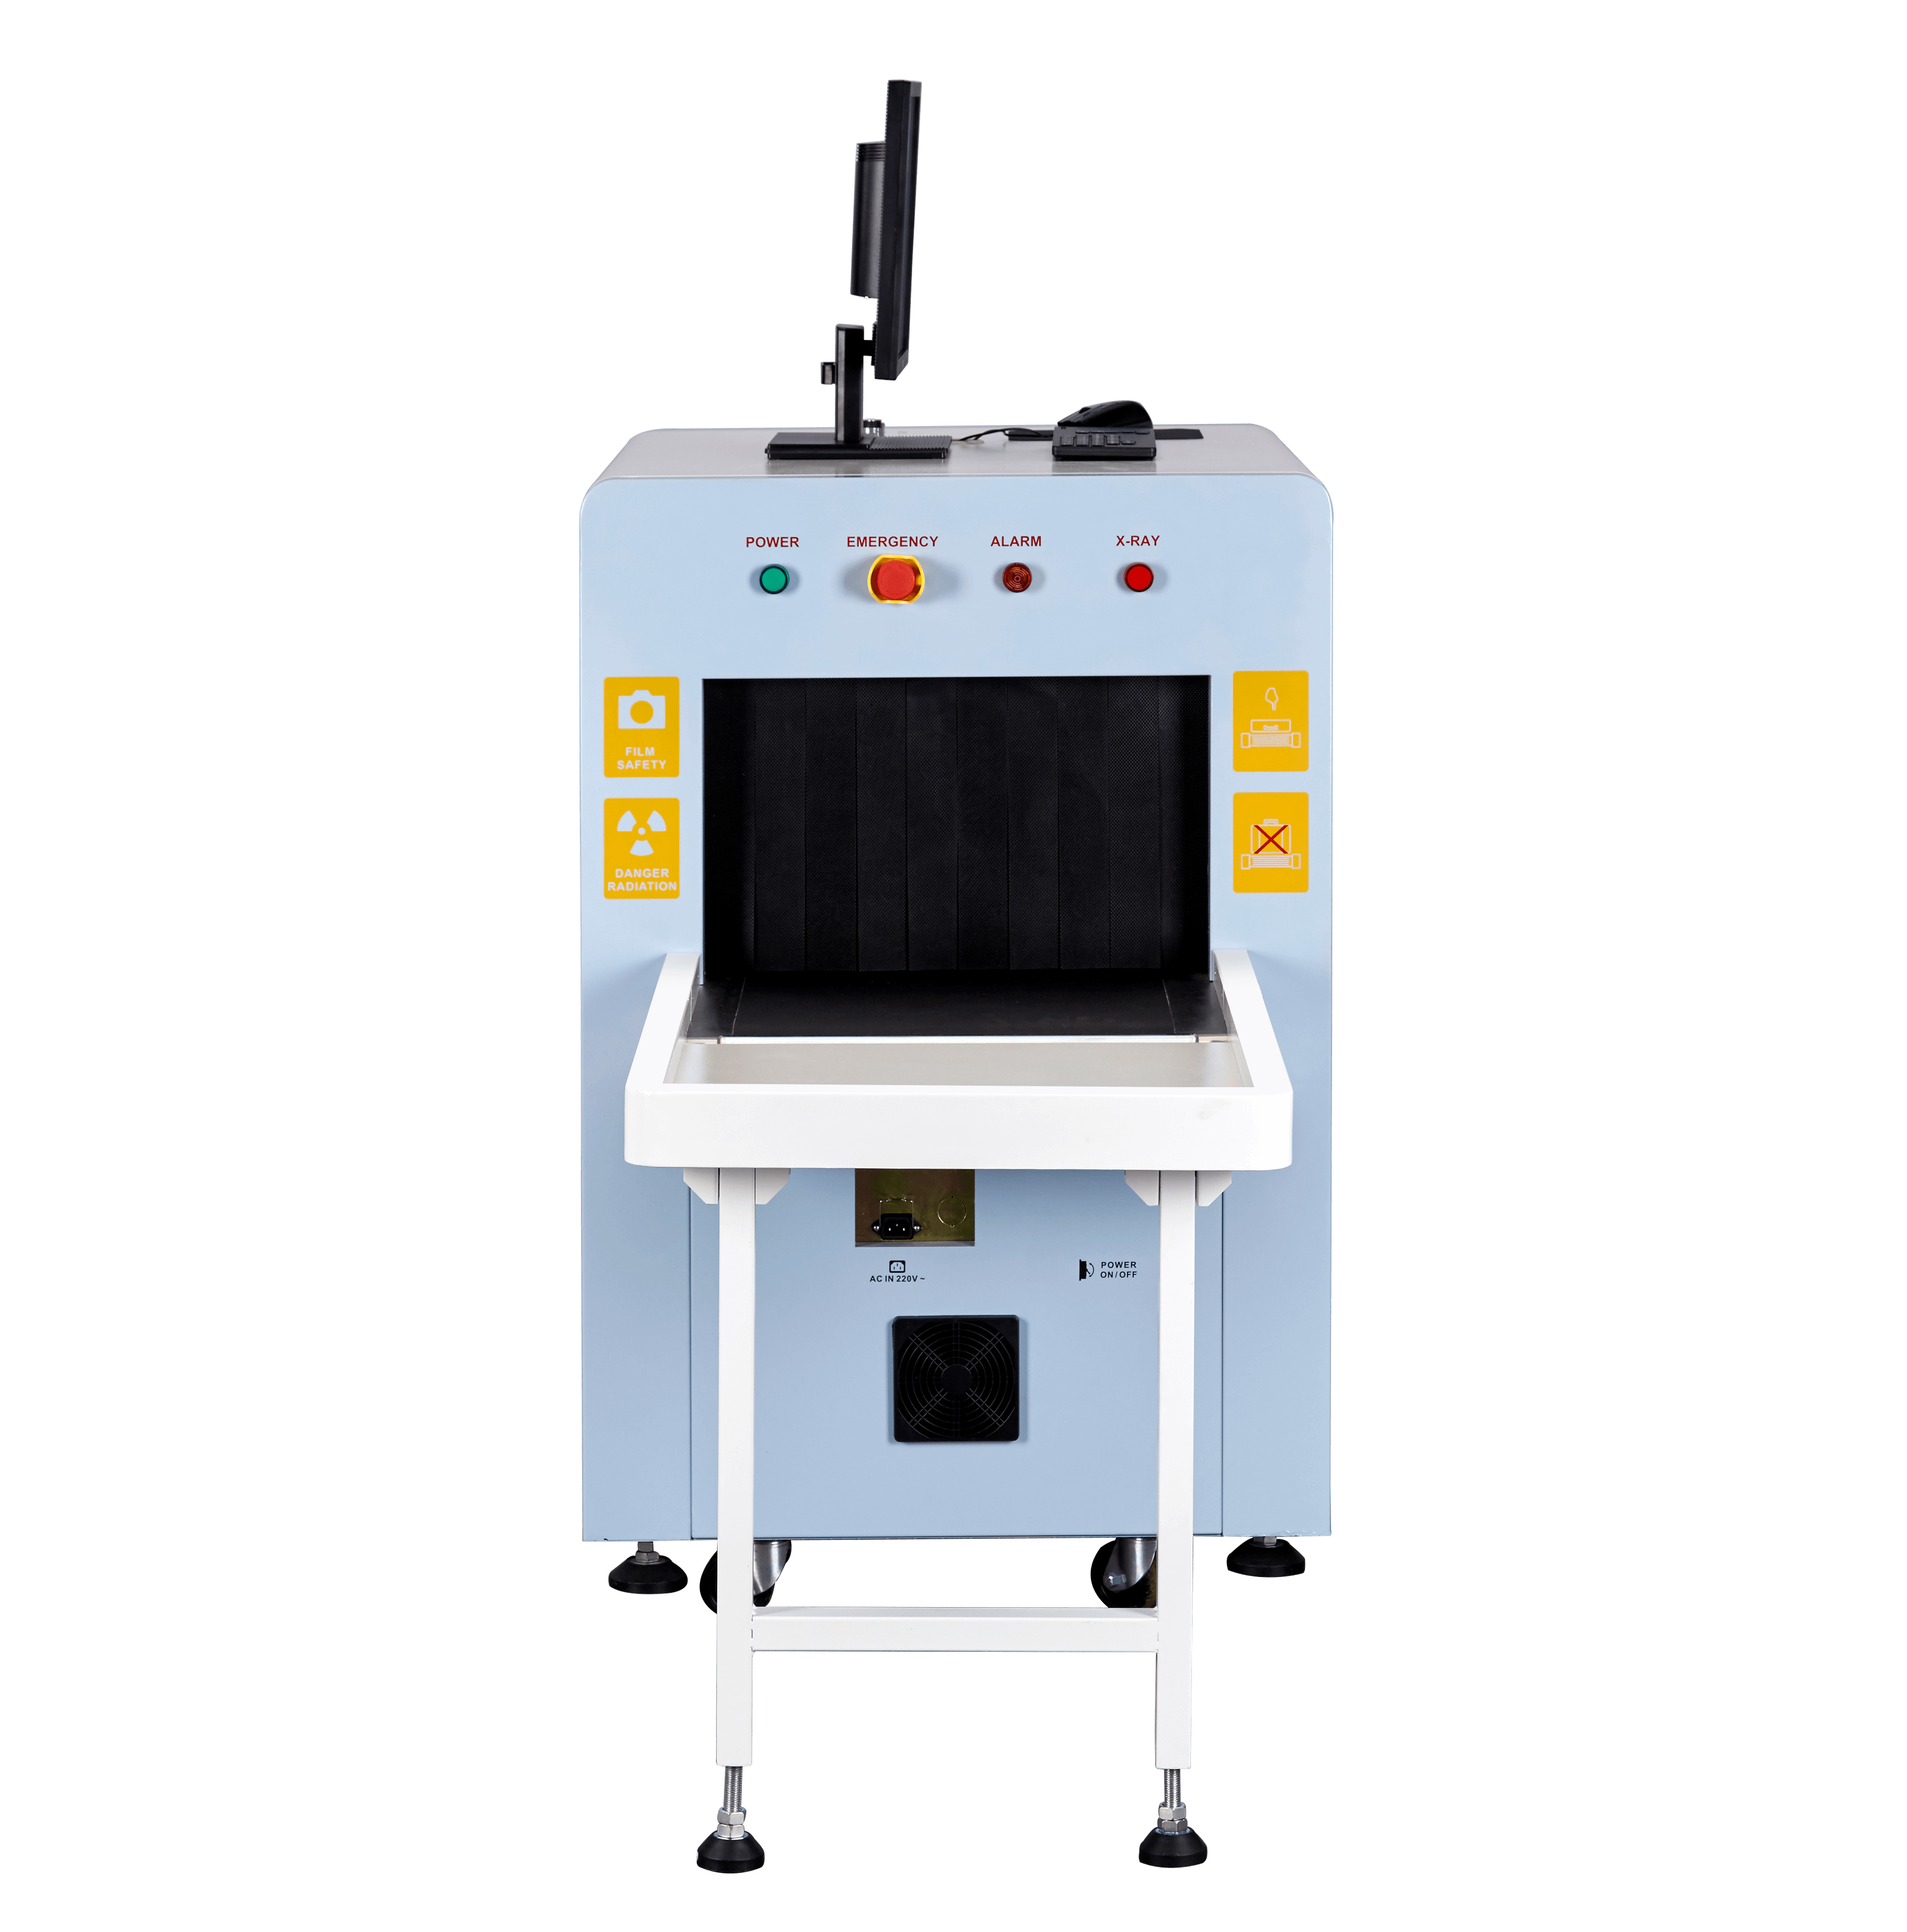 Máquina del escáner del correo del sistema X Ray de Safeway para la inspección de seguridad de la estación de tren